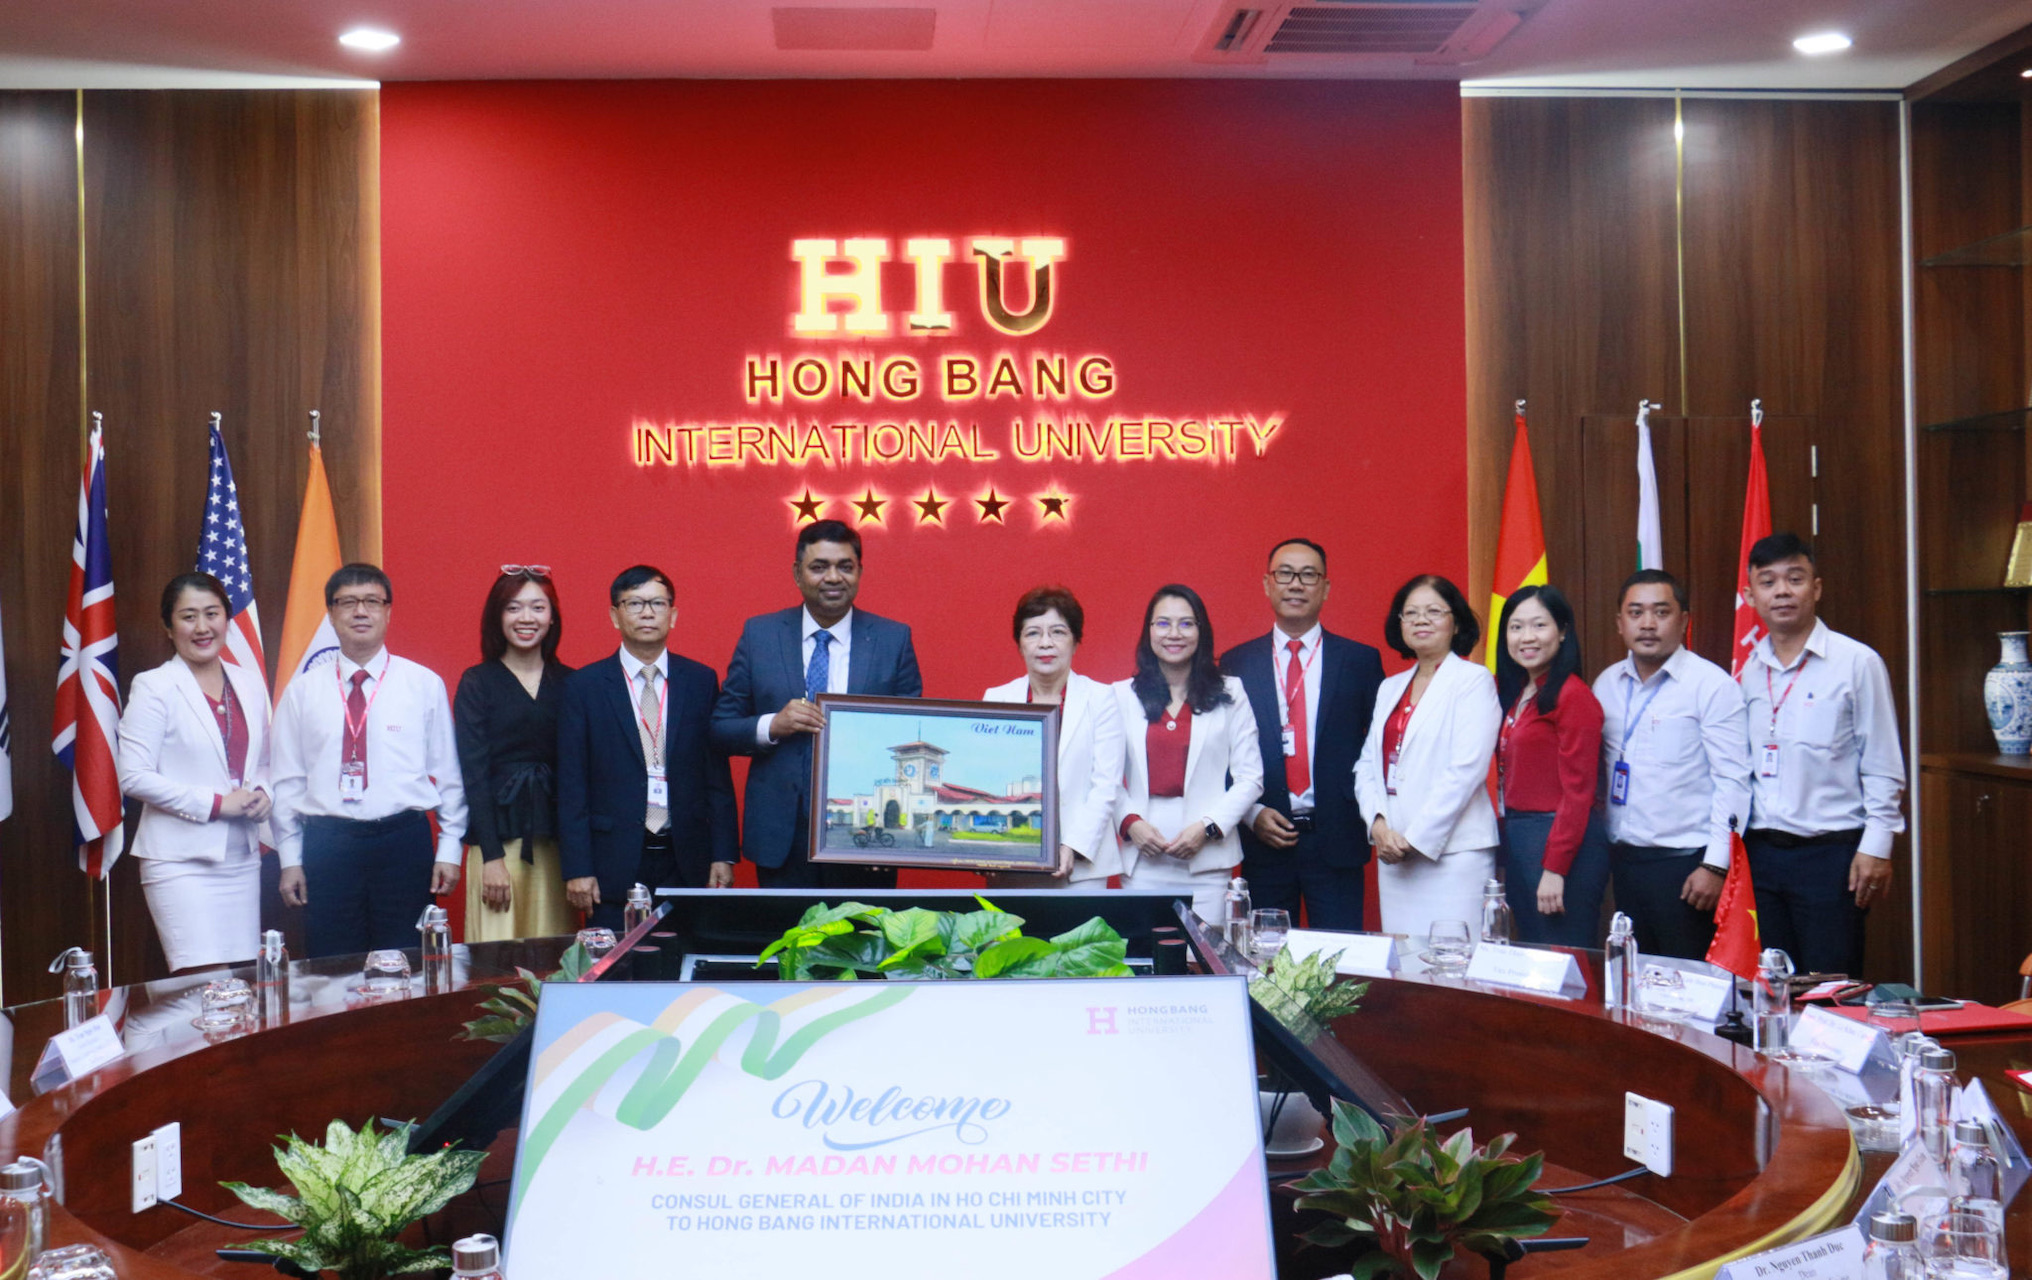 Consulate General of India in Ho Chi Minh city visits Hong Bang International University